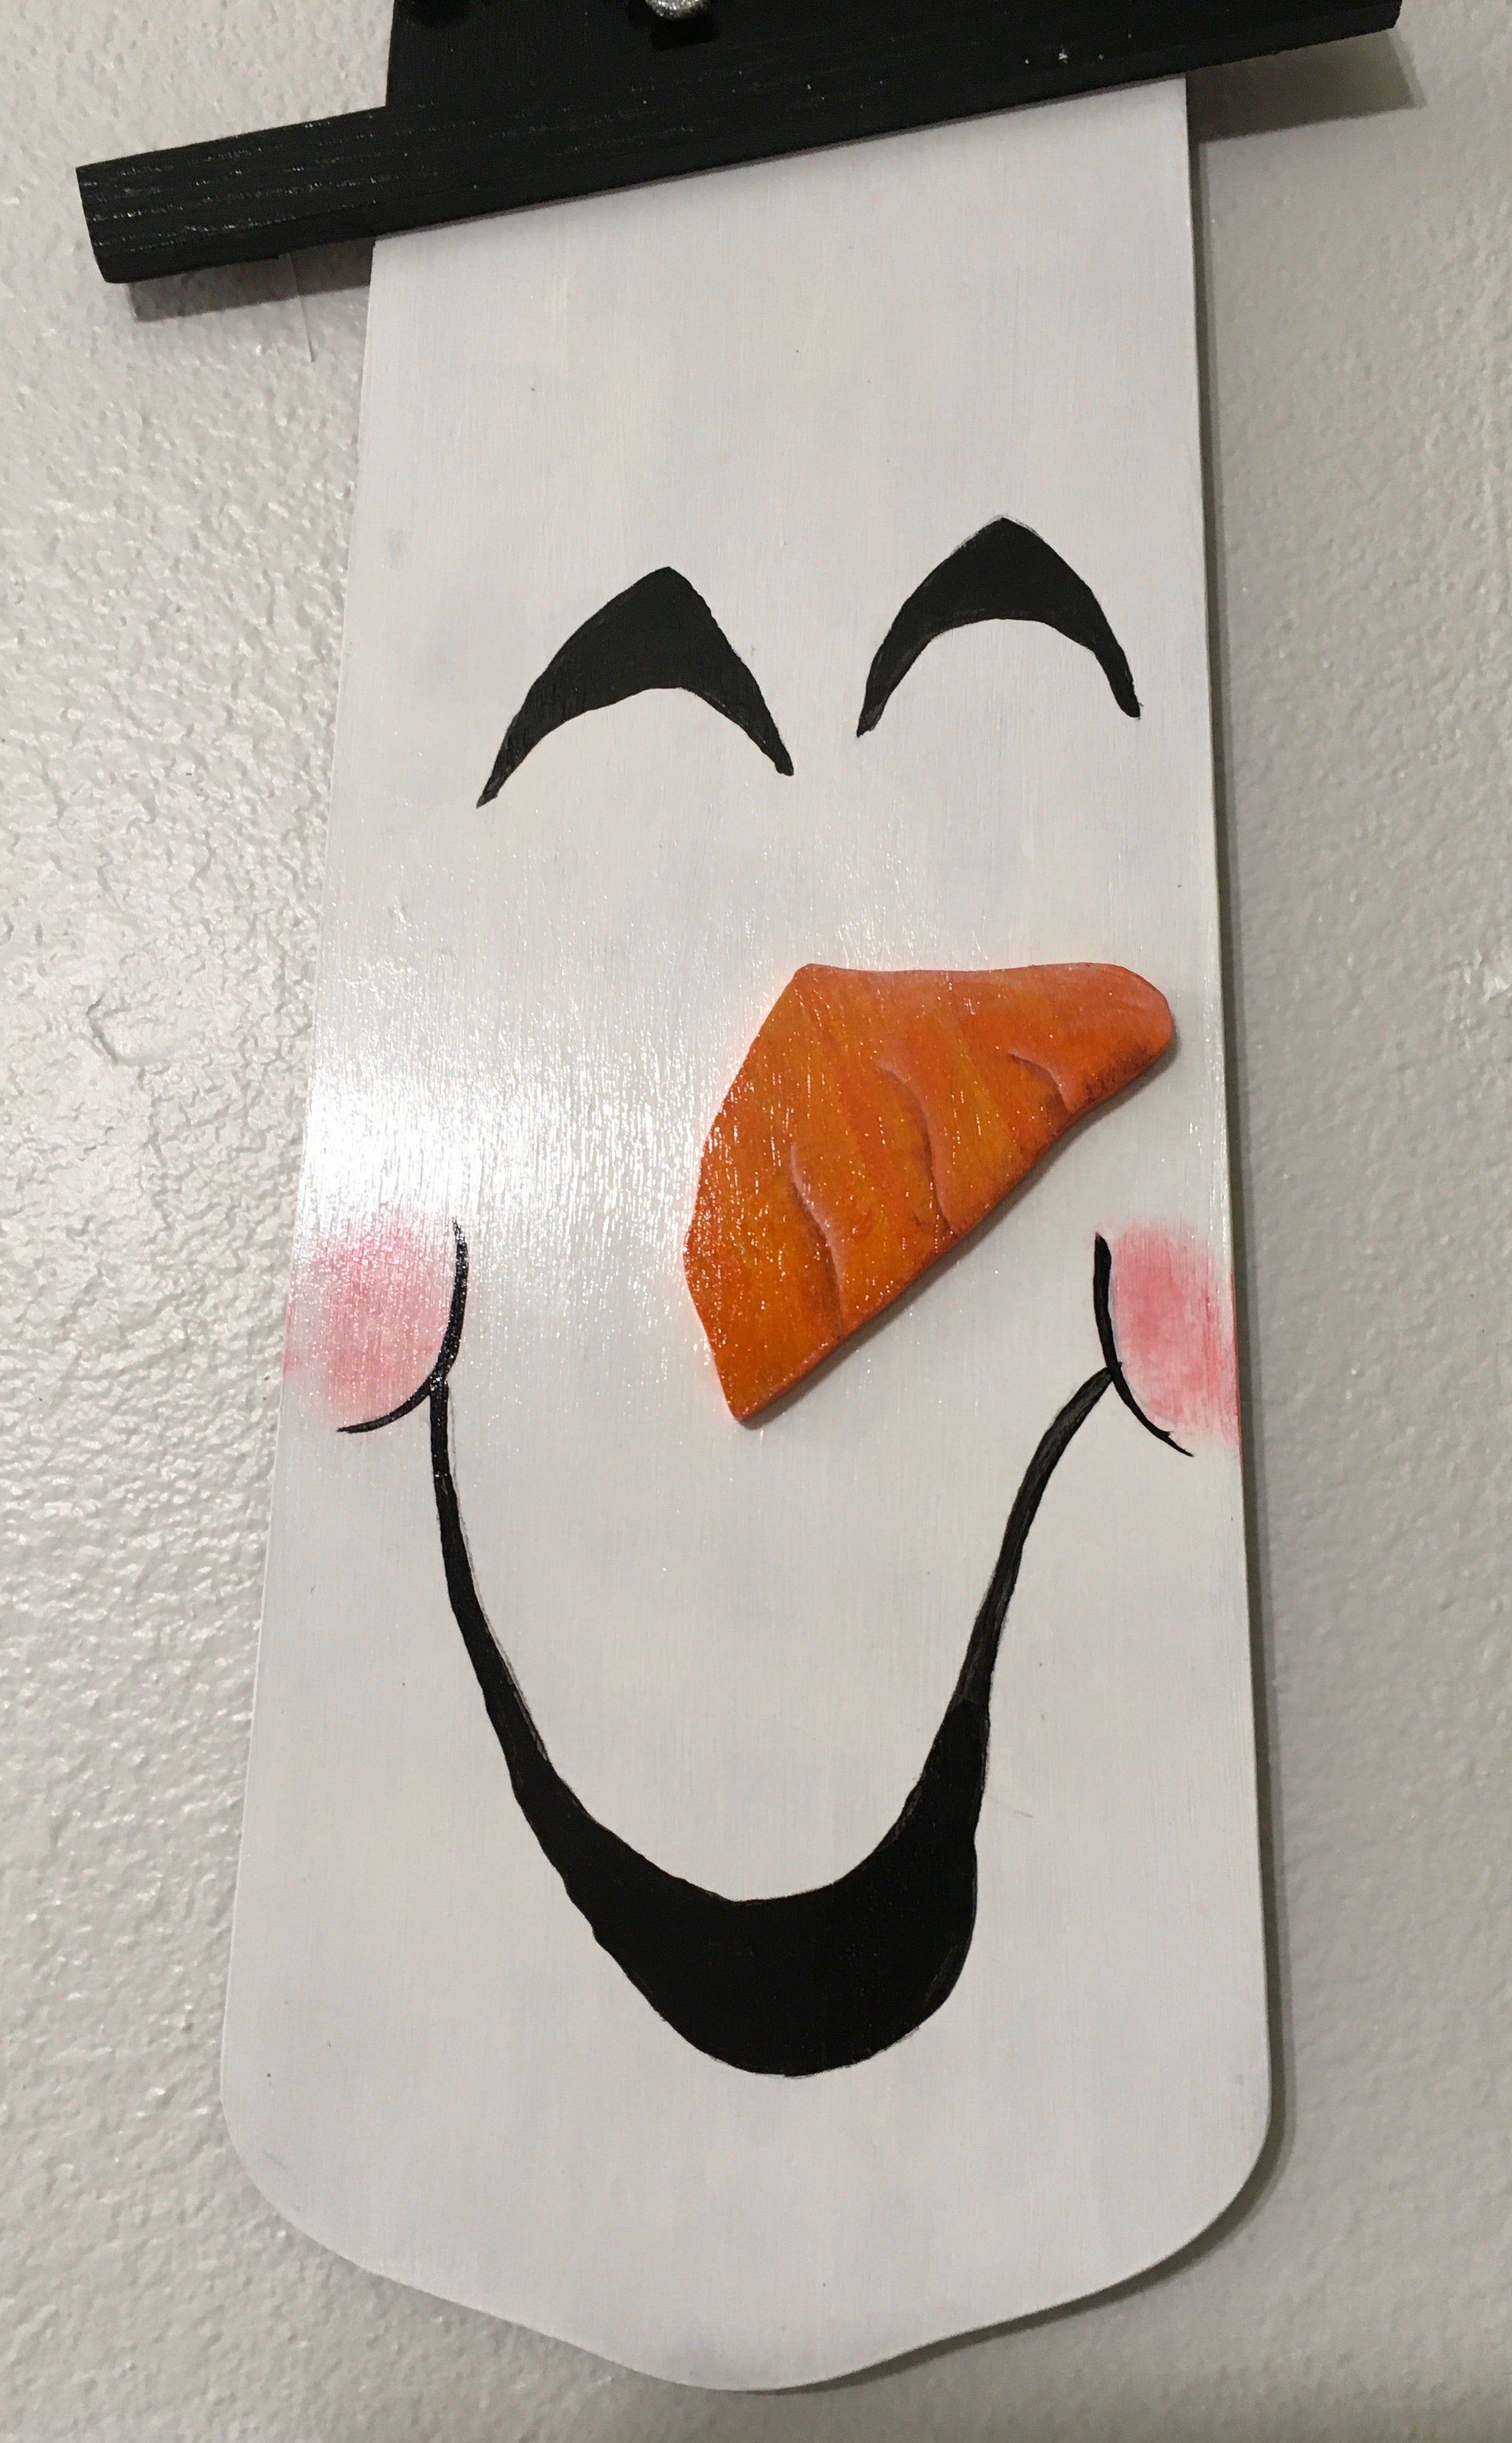 Fan Blade Wall Art Chalkboard Snowman 1